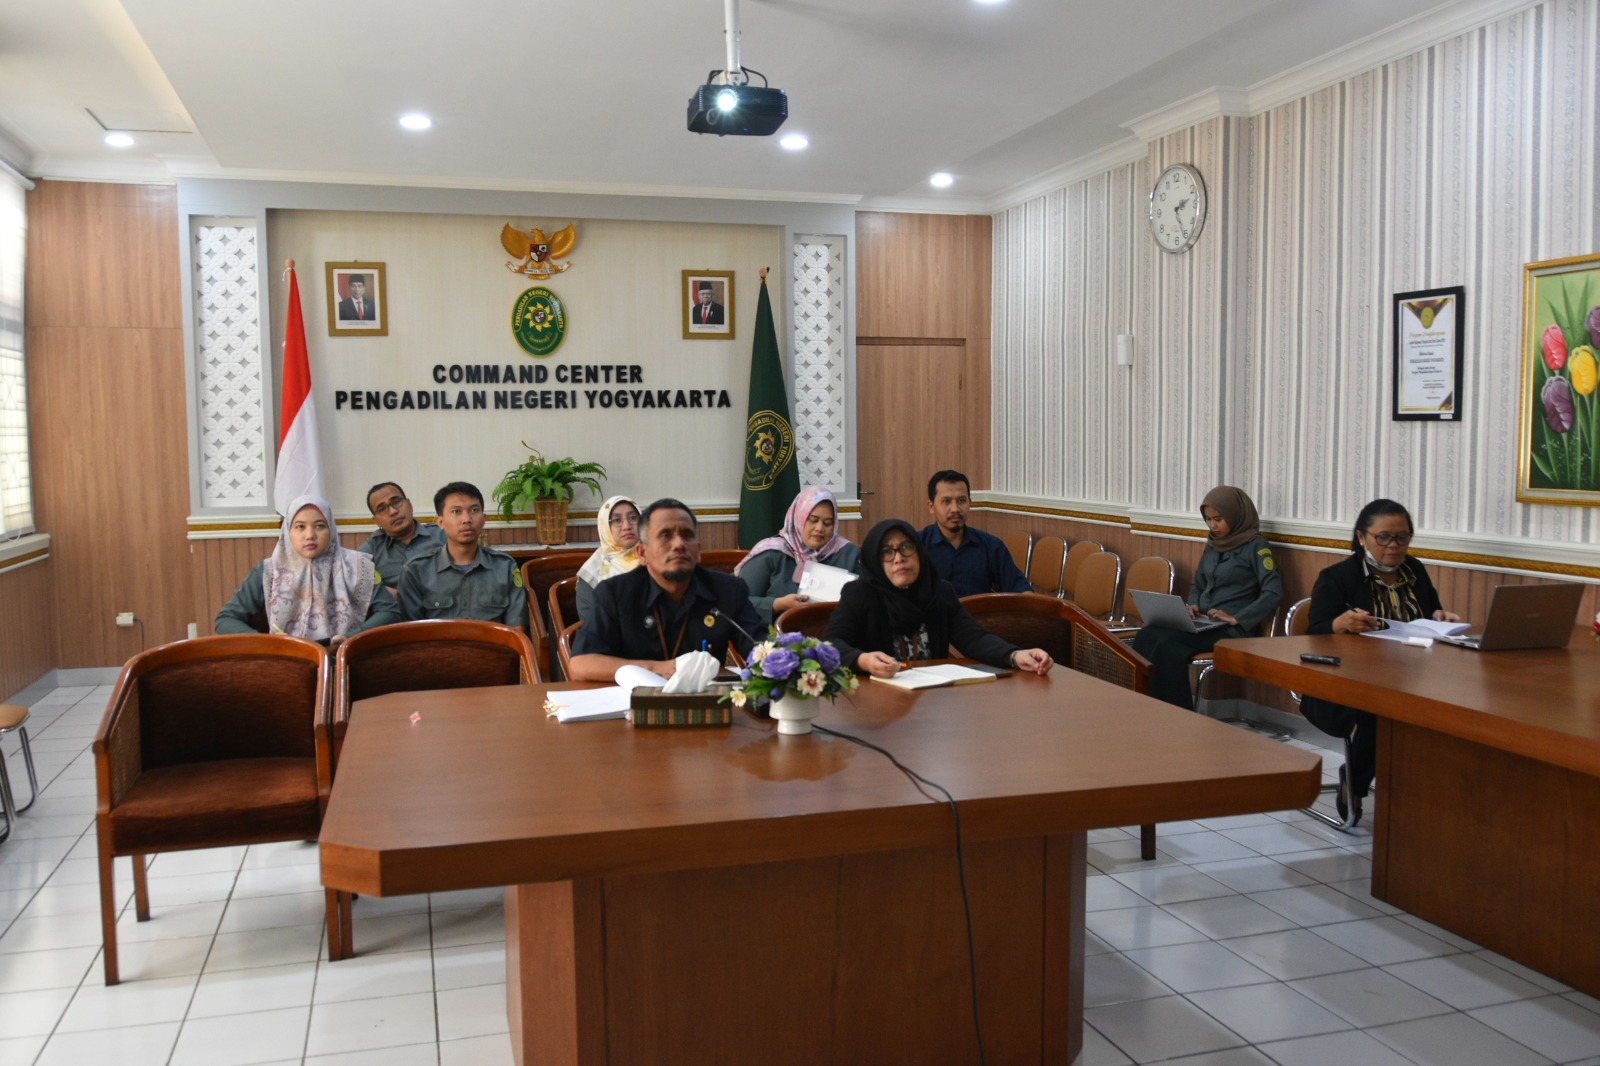 Pengadilan Negeri Yogyakarta Mengikuti Sosialisasi Pedoman Tata Naskah Dinas di Lingkungan Mahkamah Agung dan Badan Peradilan Dibawahnya